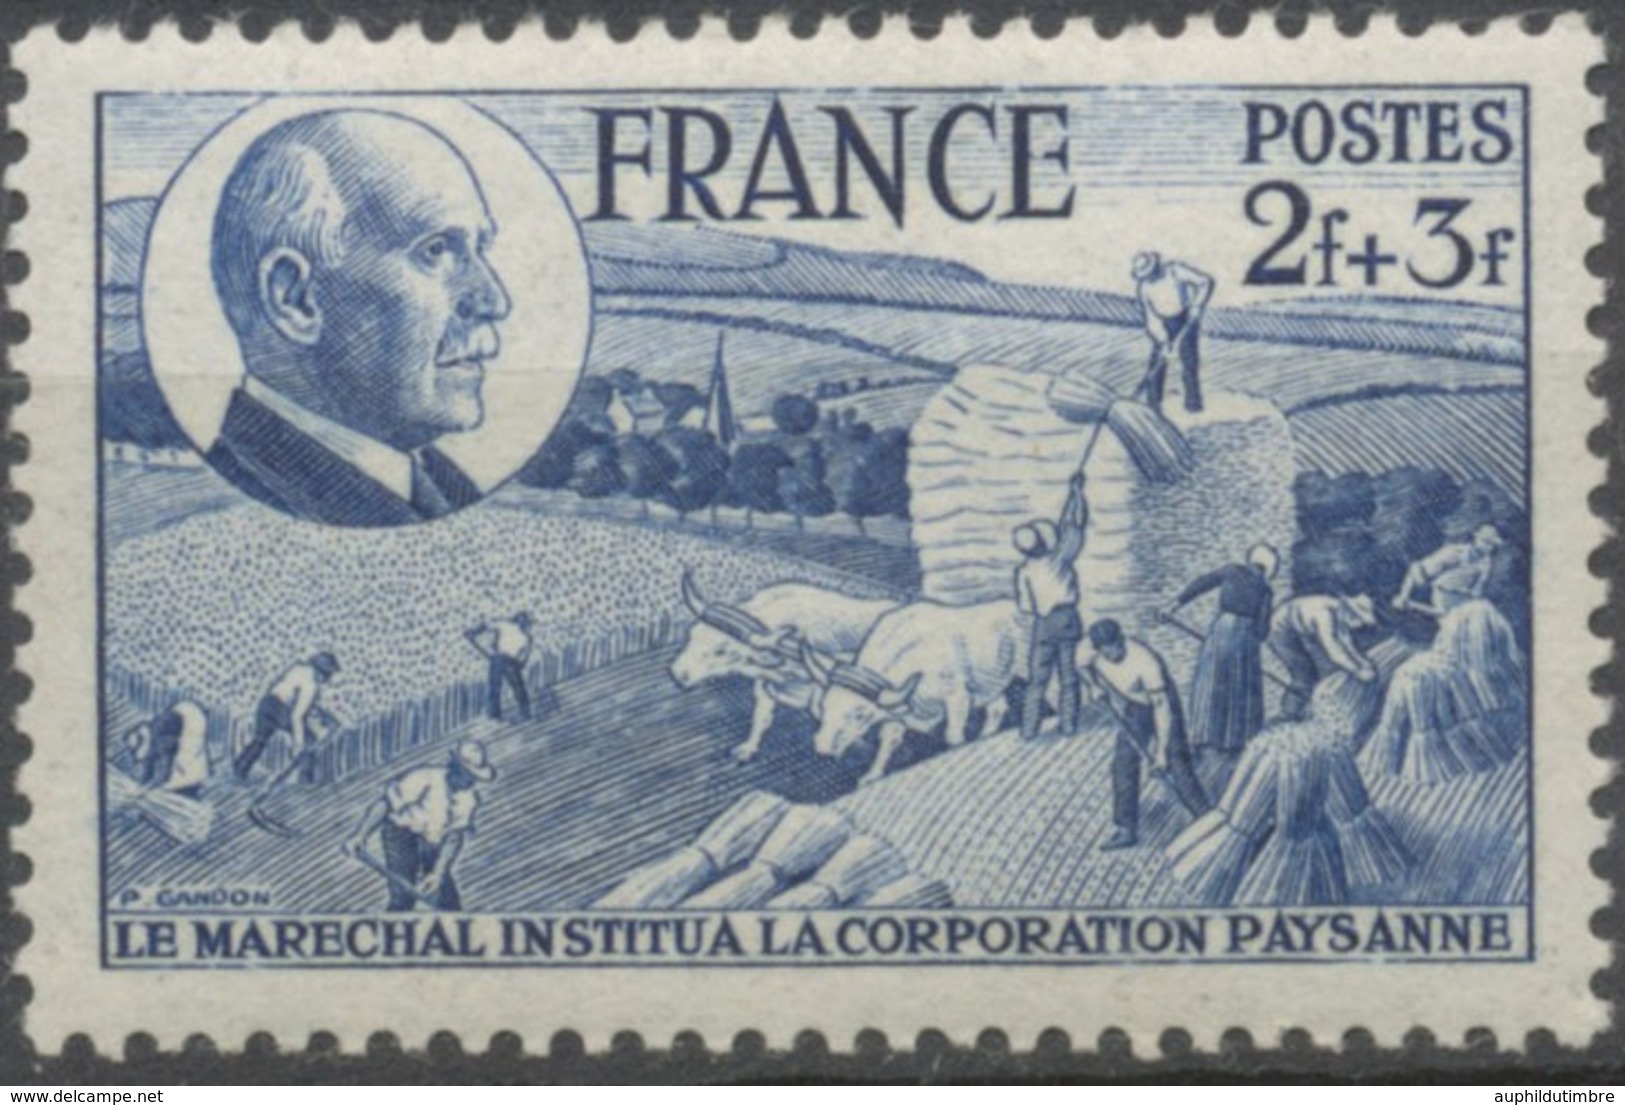 88e Anniversaire Du Maréchal Pétain. Corporation Paysanne.  2f.+3f. Bleu Neuf Luxe ** Y607 - Nuovi